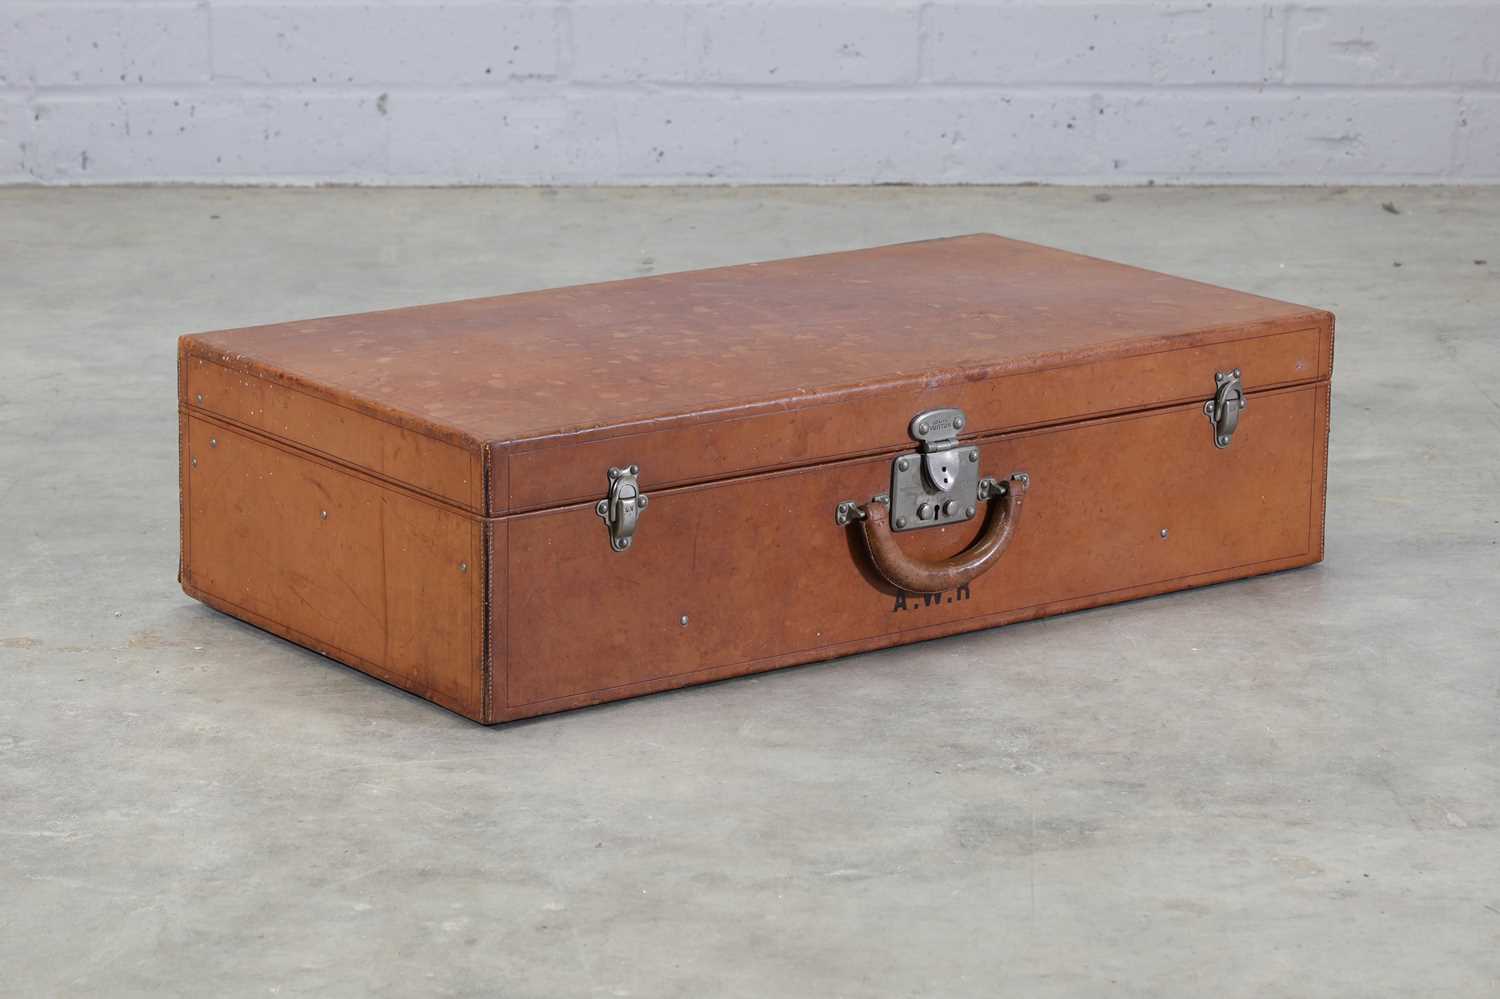 Lot 199 - A Louis Vuitton tan leather suitcase